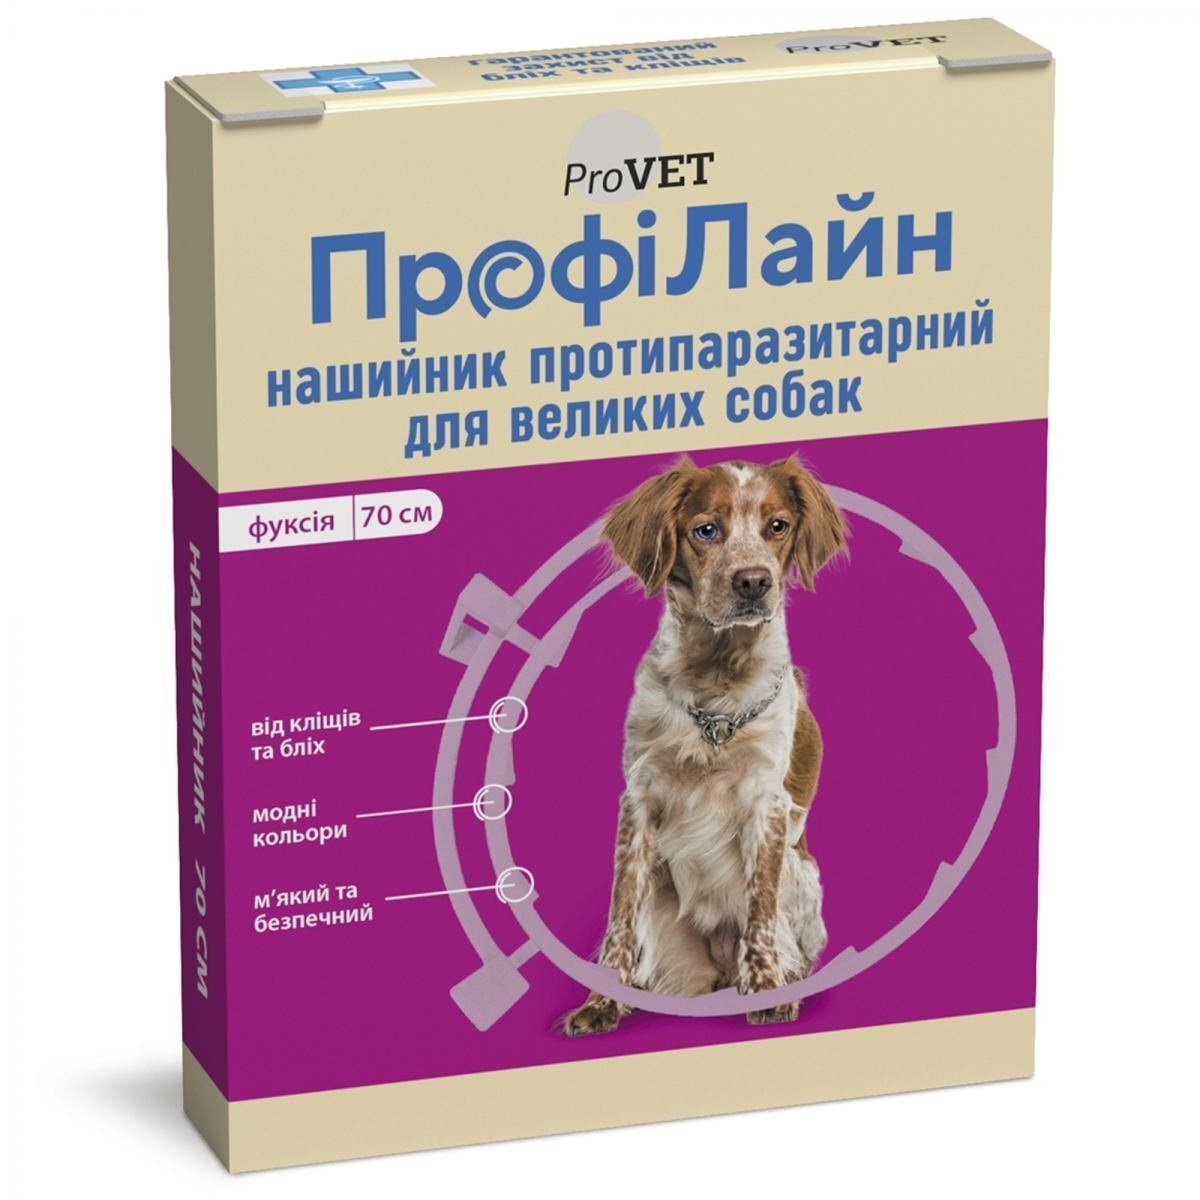 Ошейник противопаразитарный ProVET ПрофиЛайн для больших пород собак, 70 см, фуксия фото 1